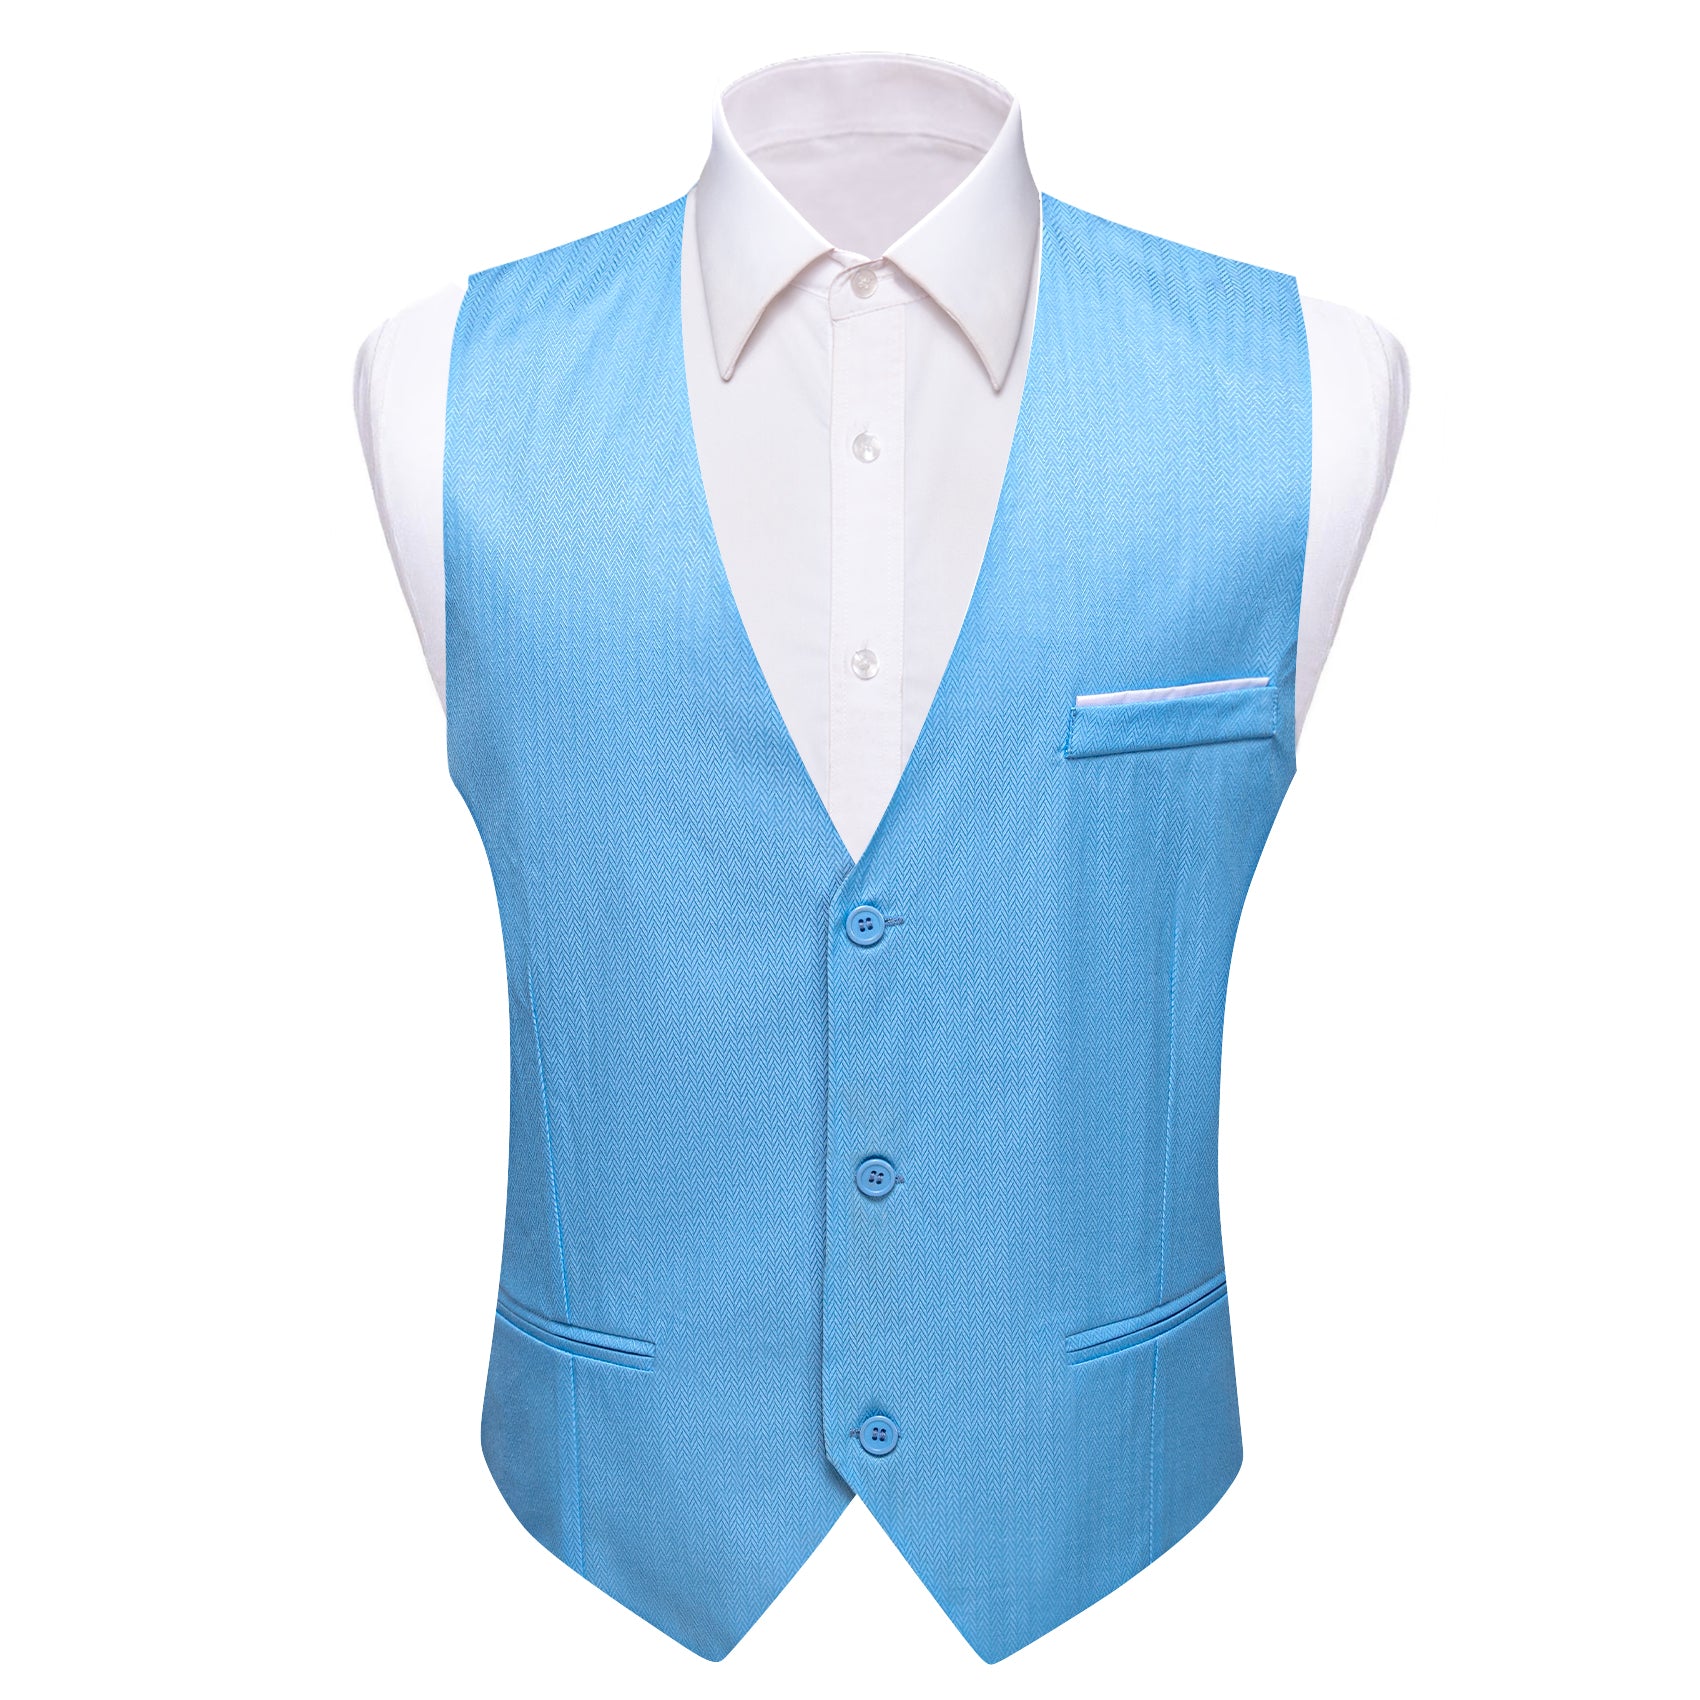 Men's Orange Solid Silk Waistcoat Vest for Business